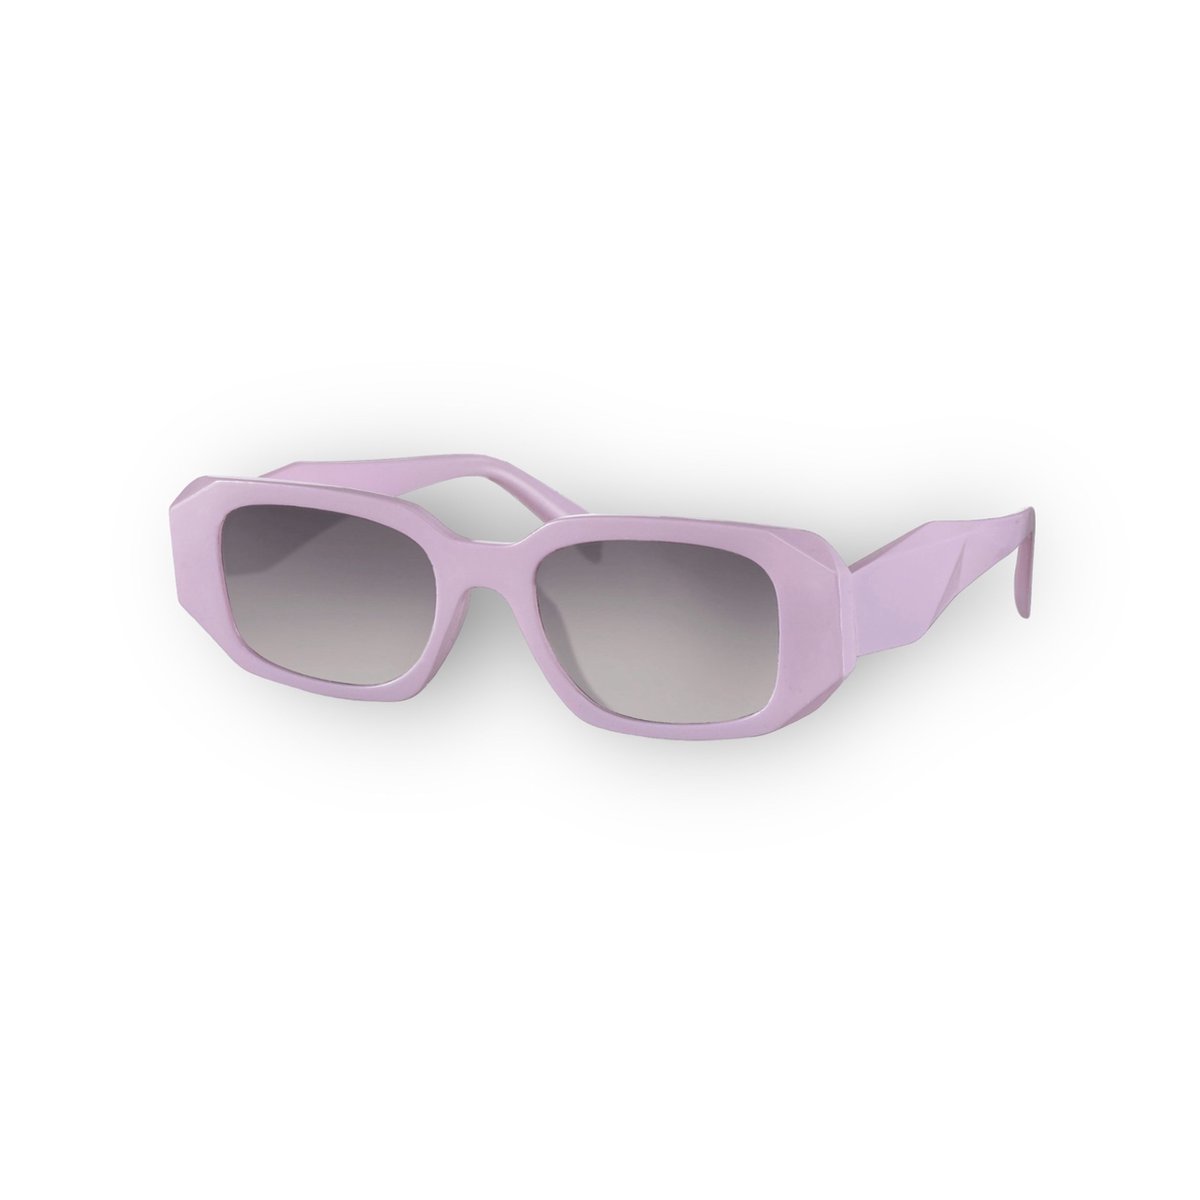 Zonnebril Dames - Dames zonnebril - Zonnebril - Paarse bril - Festival bril - Bril - 100% UV-bescherming – Paars